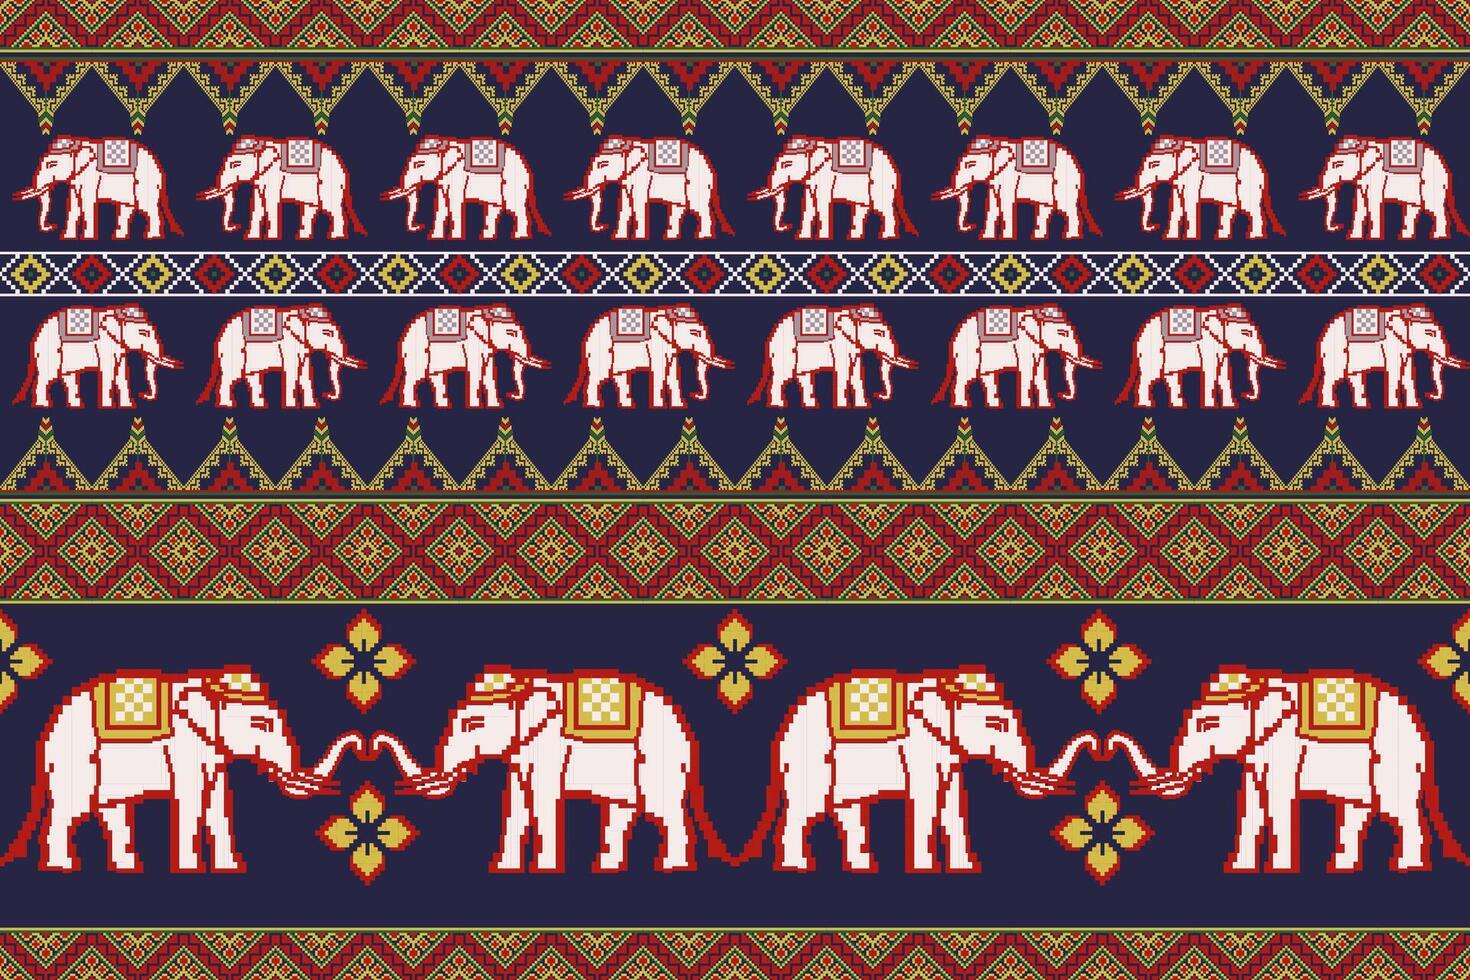 traditionell thailändisch Elefant Pixel Kunst bunt nahtlos Muster. Design zum Stoff, Fliese, Stickerei, Teppich, Verpackung, Hintergrund, und Hintergrund vektor